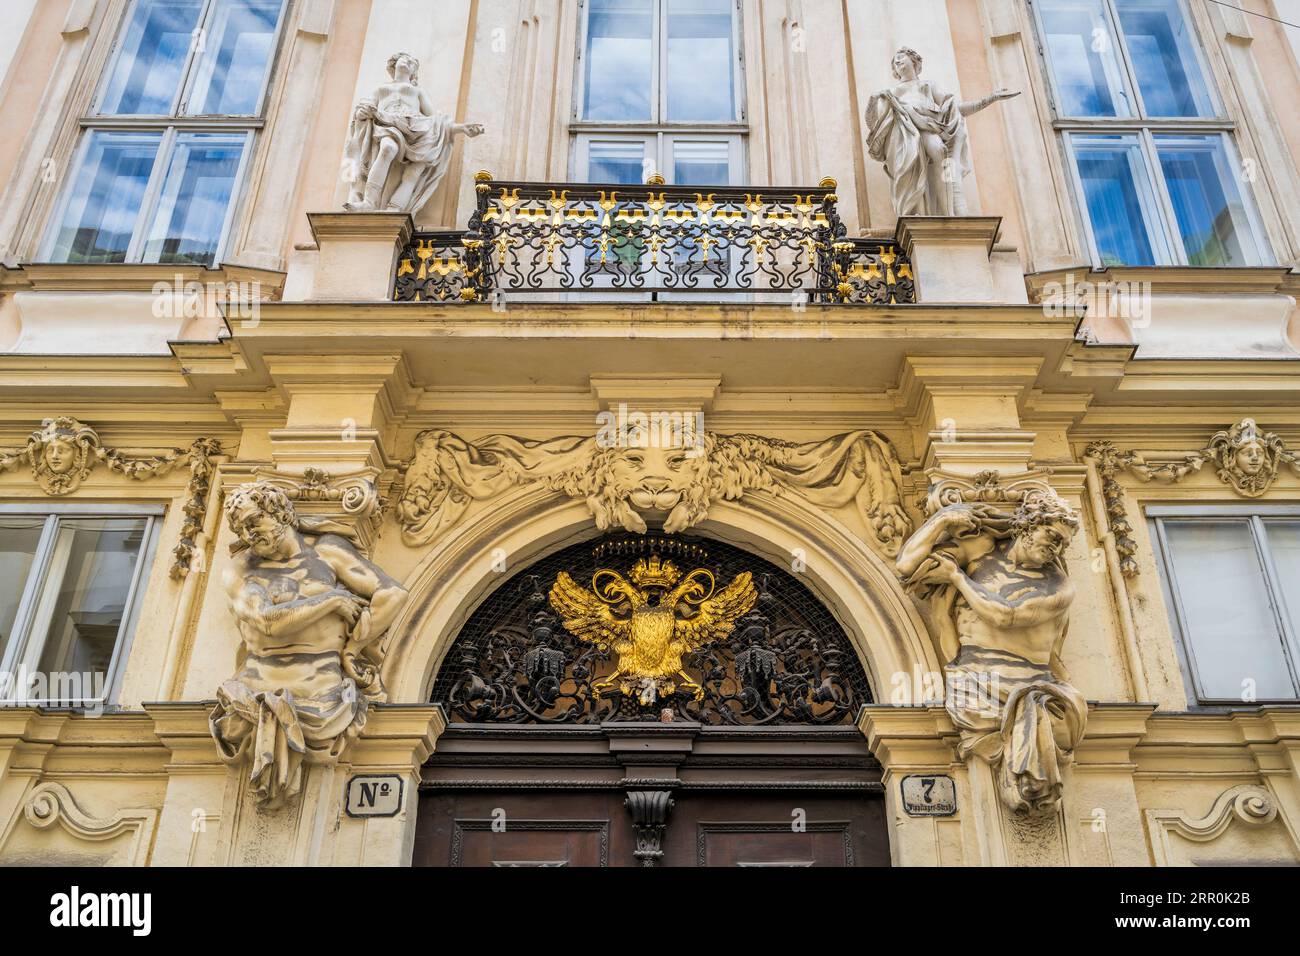 Art nouveau building, Vienna, Austria Stock Photo